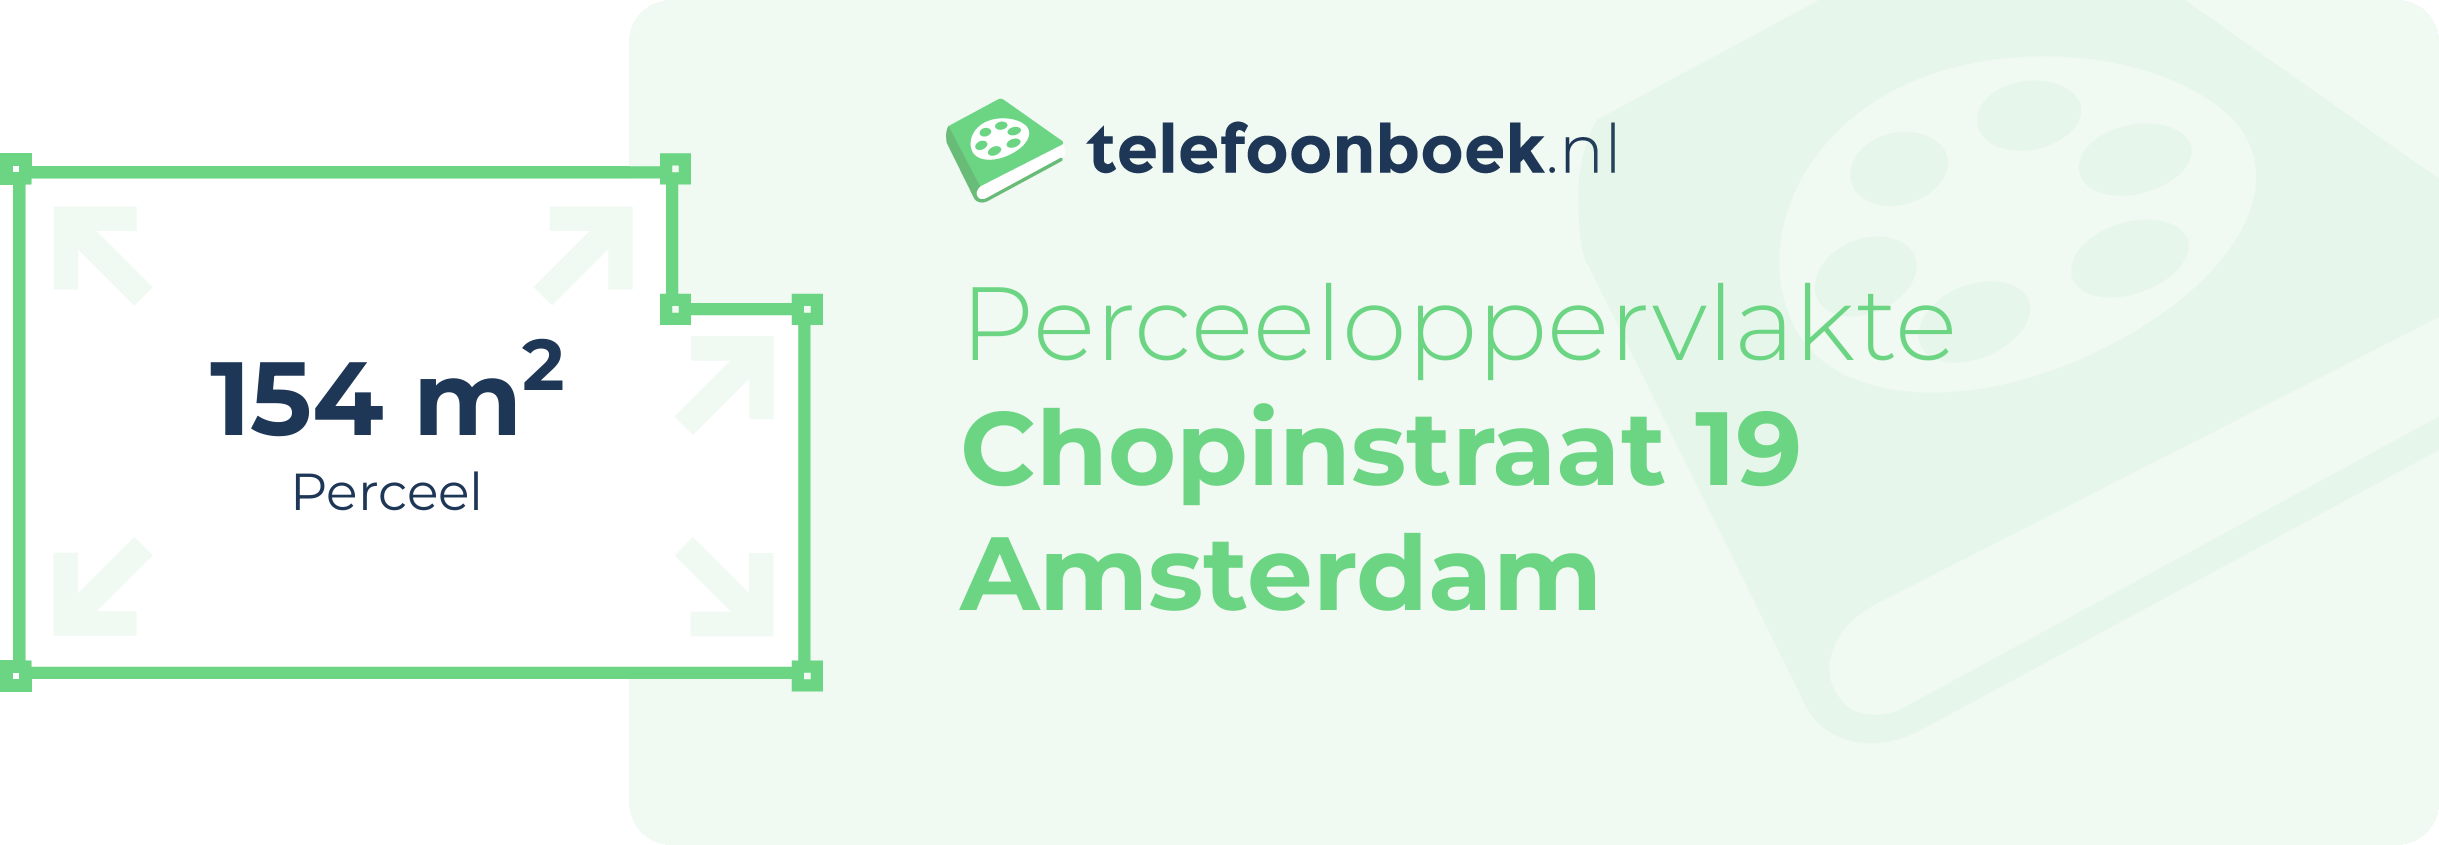 Perceeloppervlakte Chopinstraat 19 Amsterdam